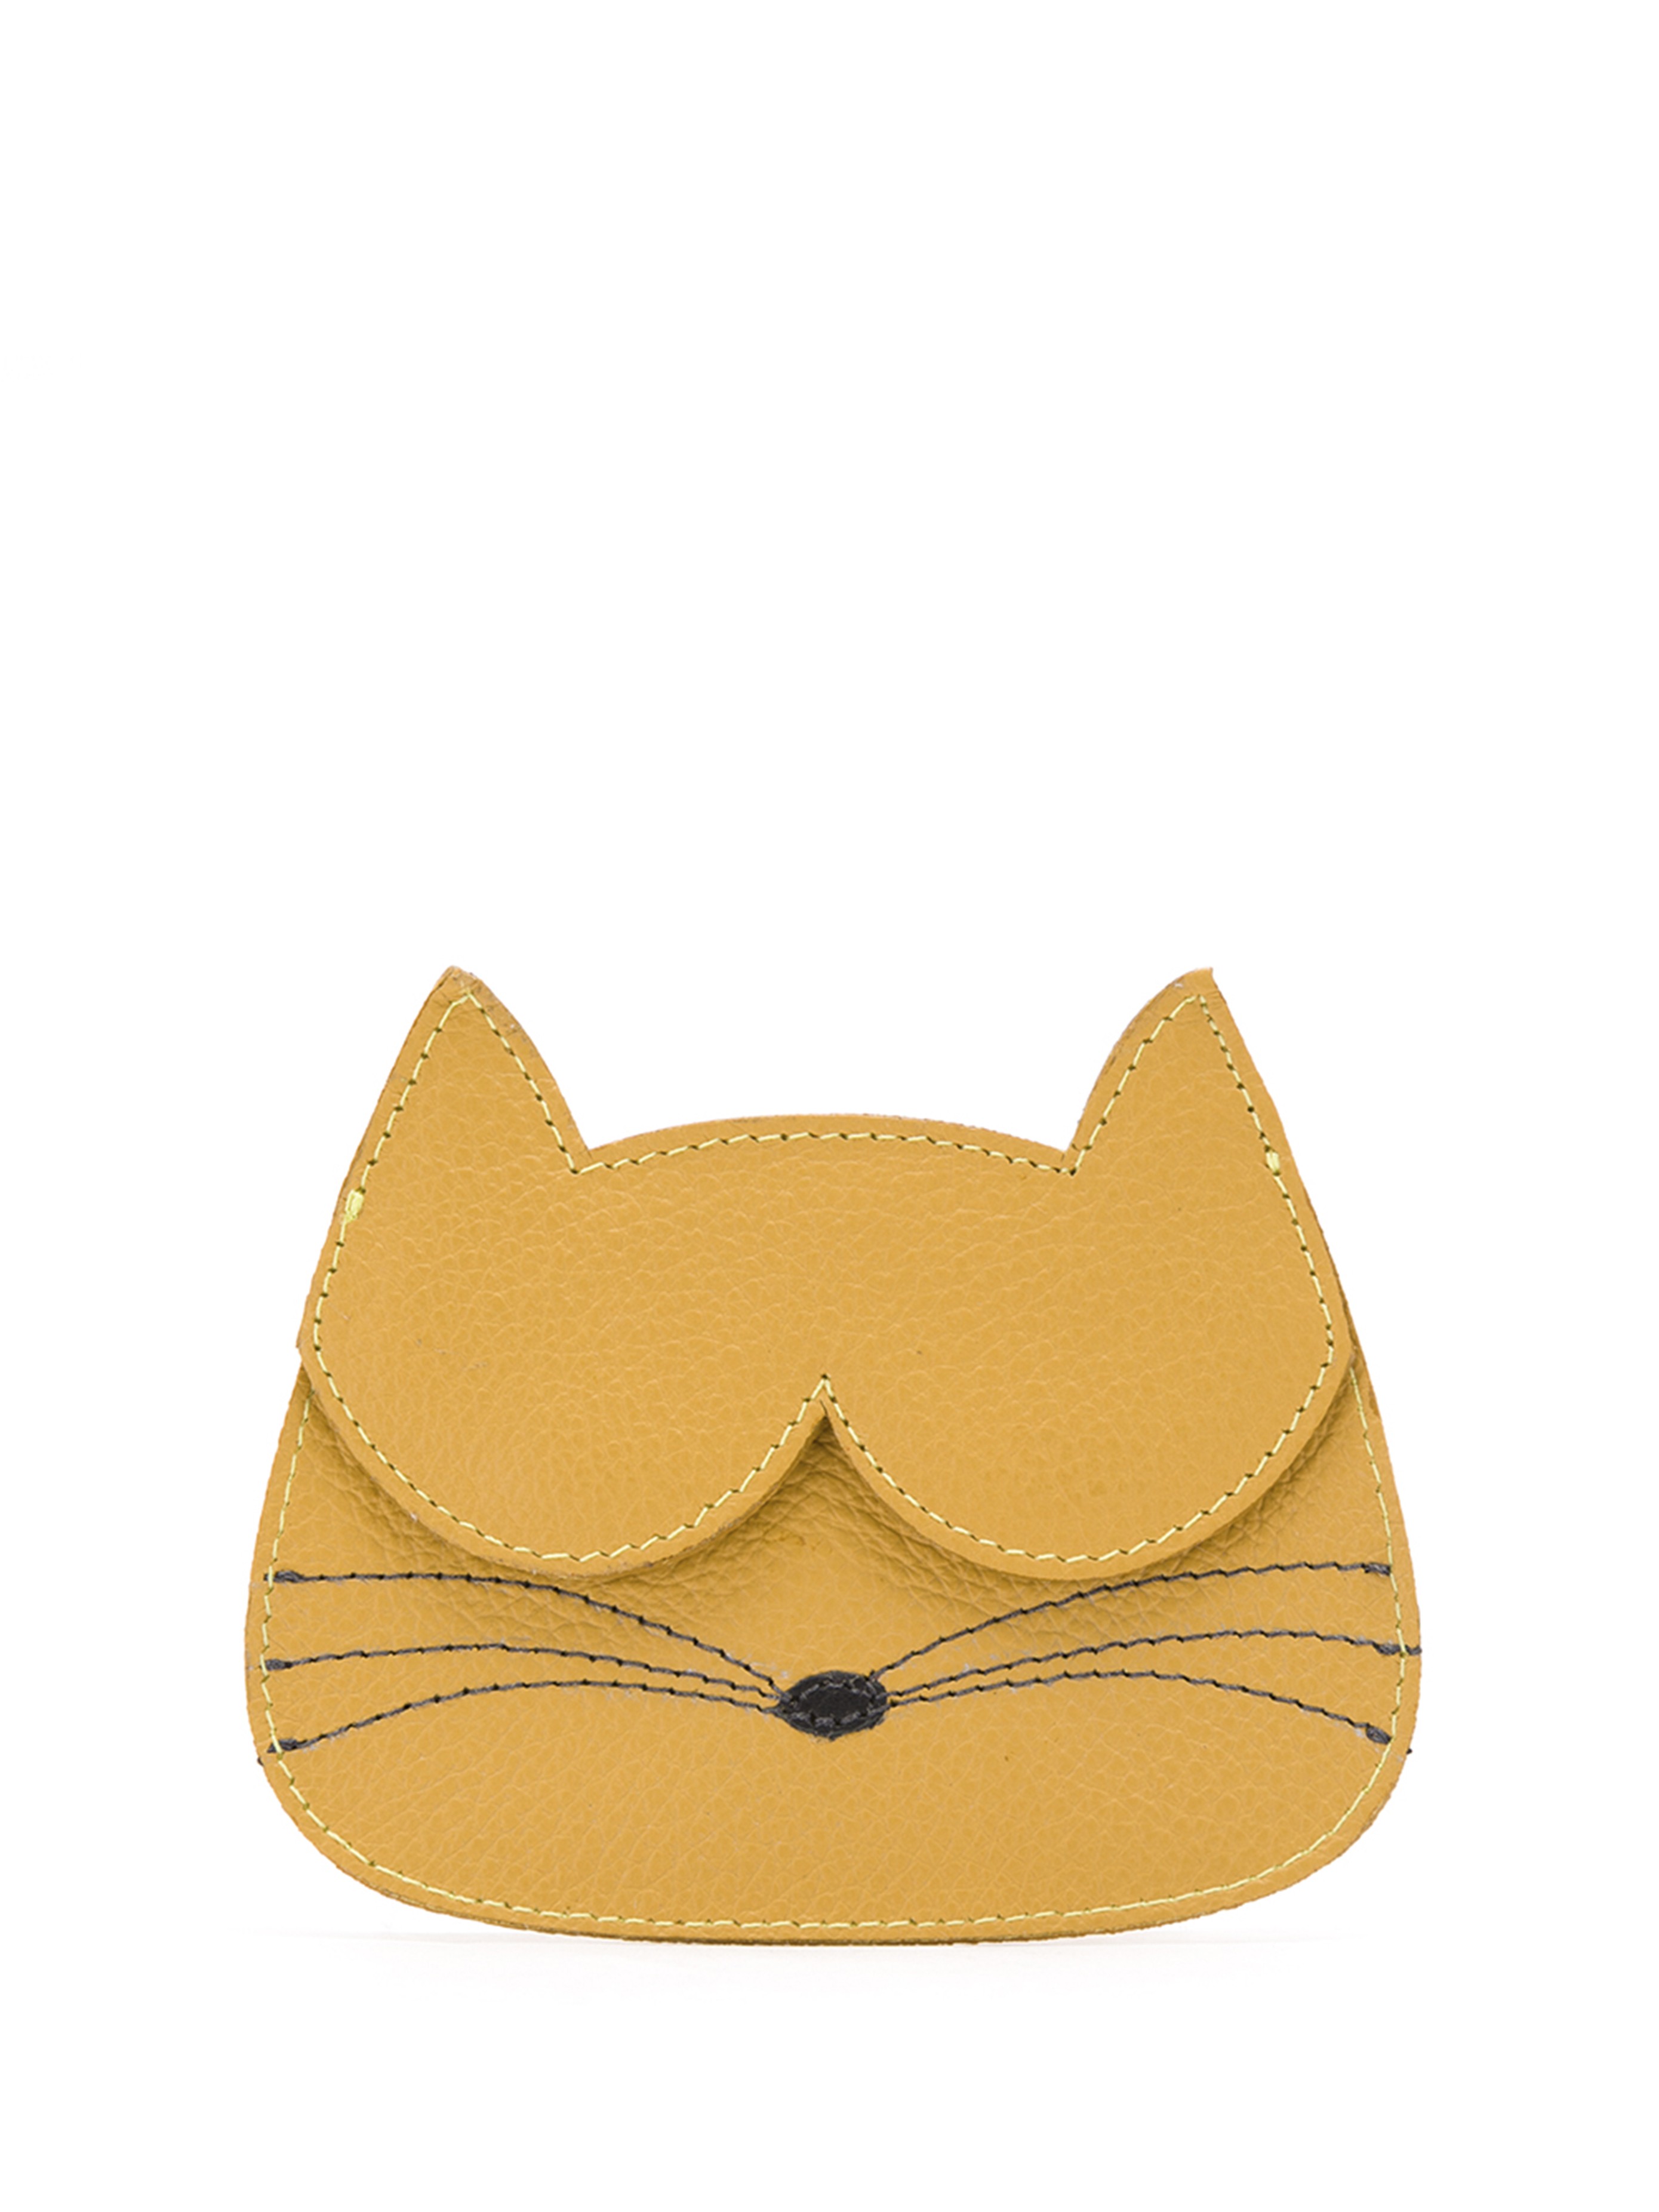 Porta Cartão Gato | Cat Cardholder